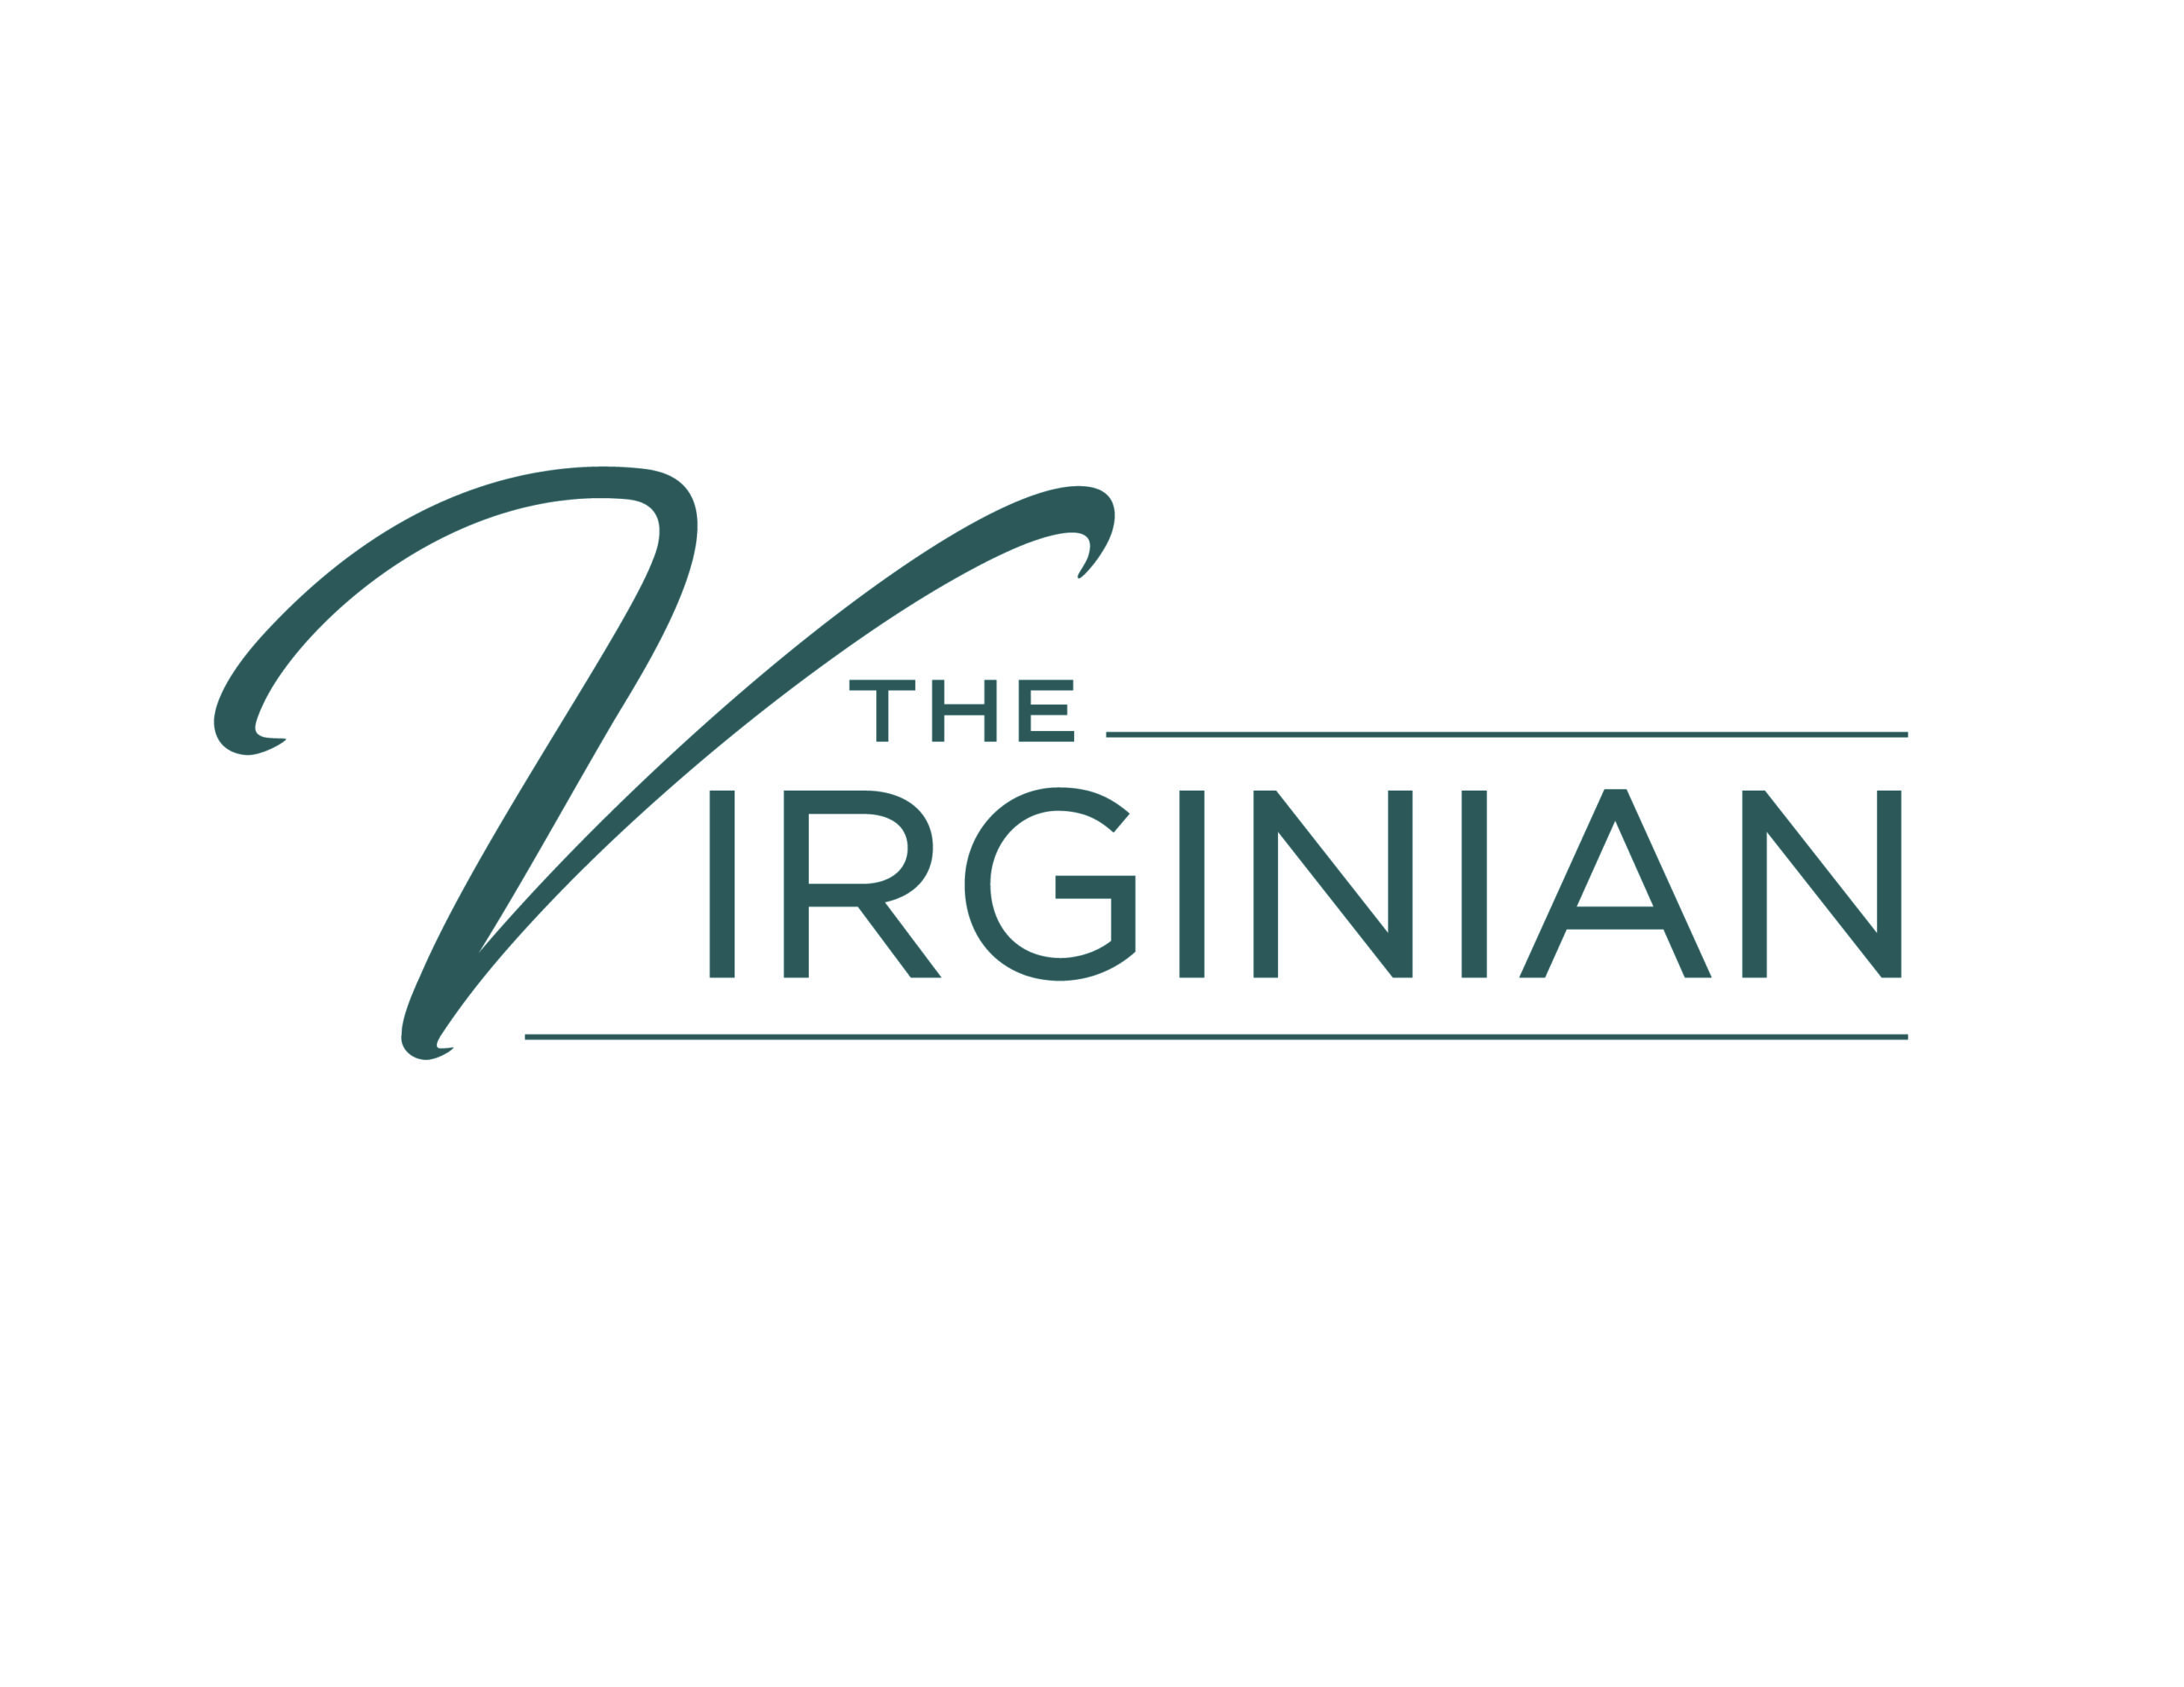 The virginian logo